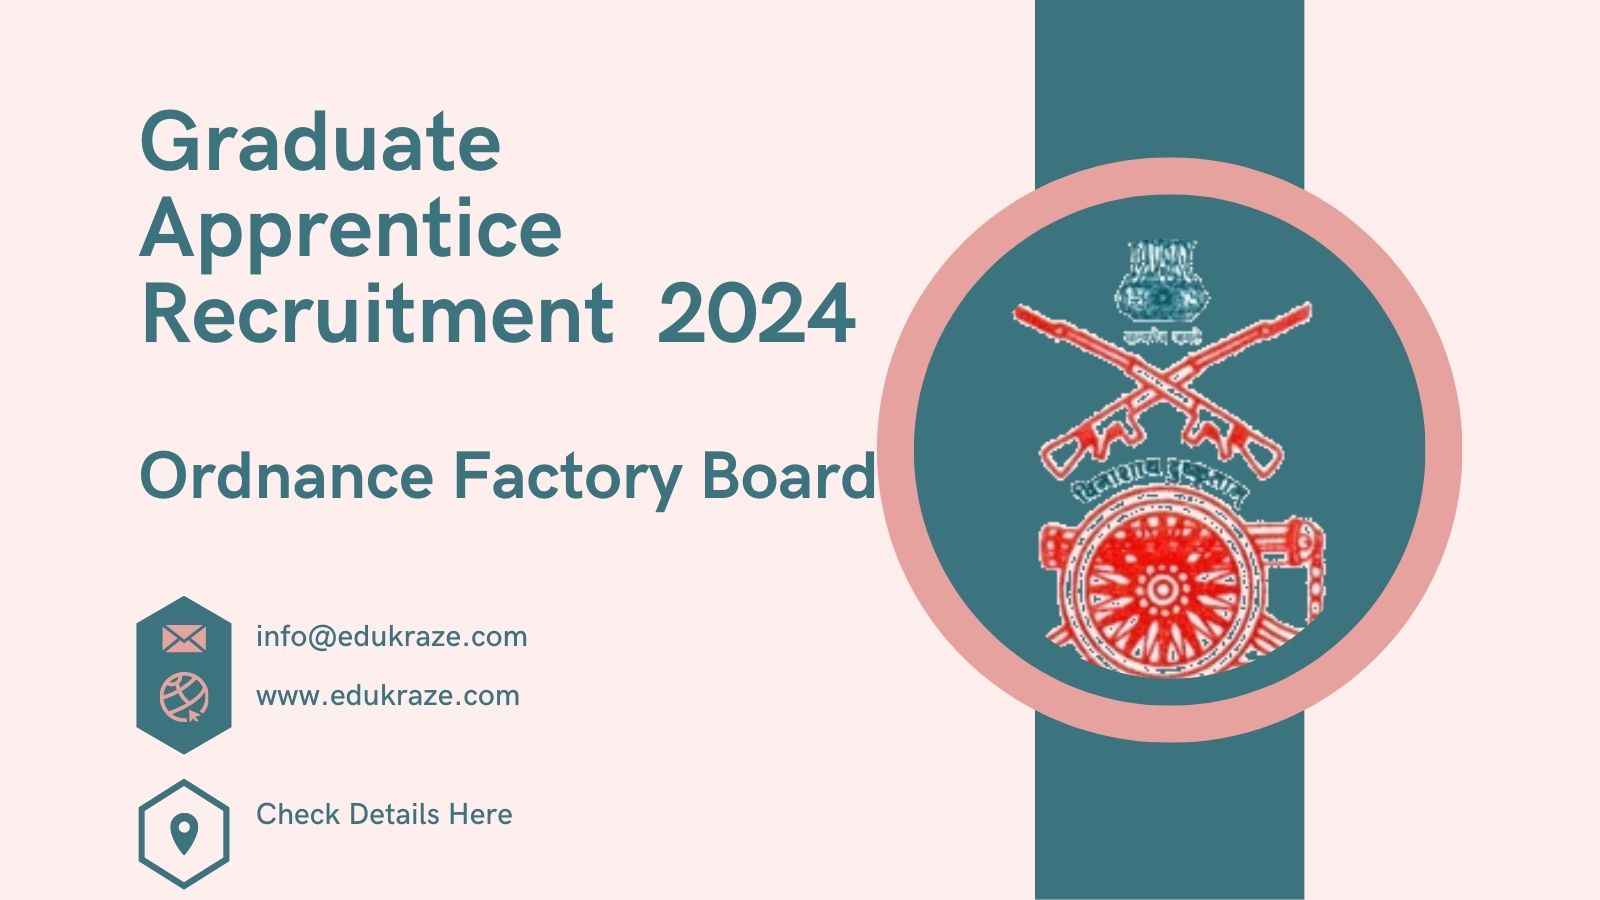 Ordnance Factory Board Recruitment 2024: Graduates, Technicians, and More Vacancies Announced